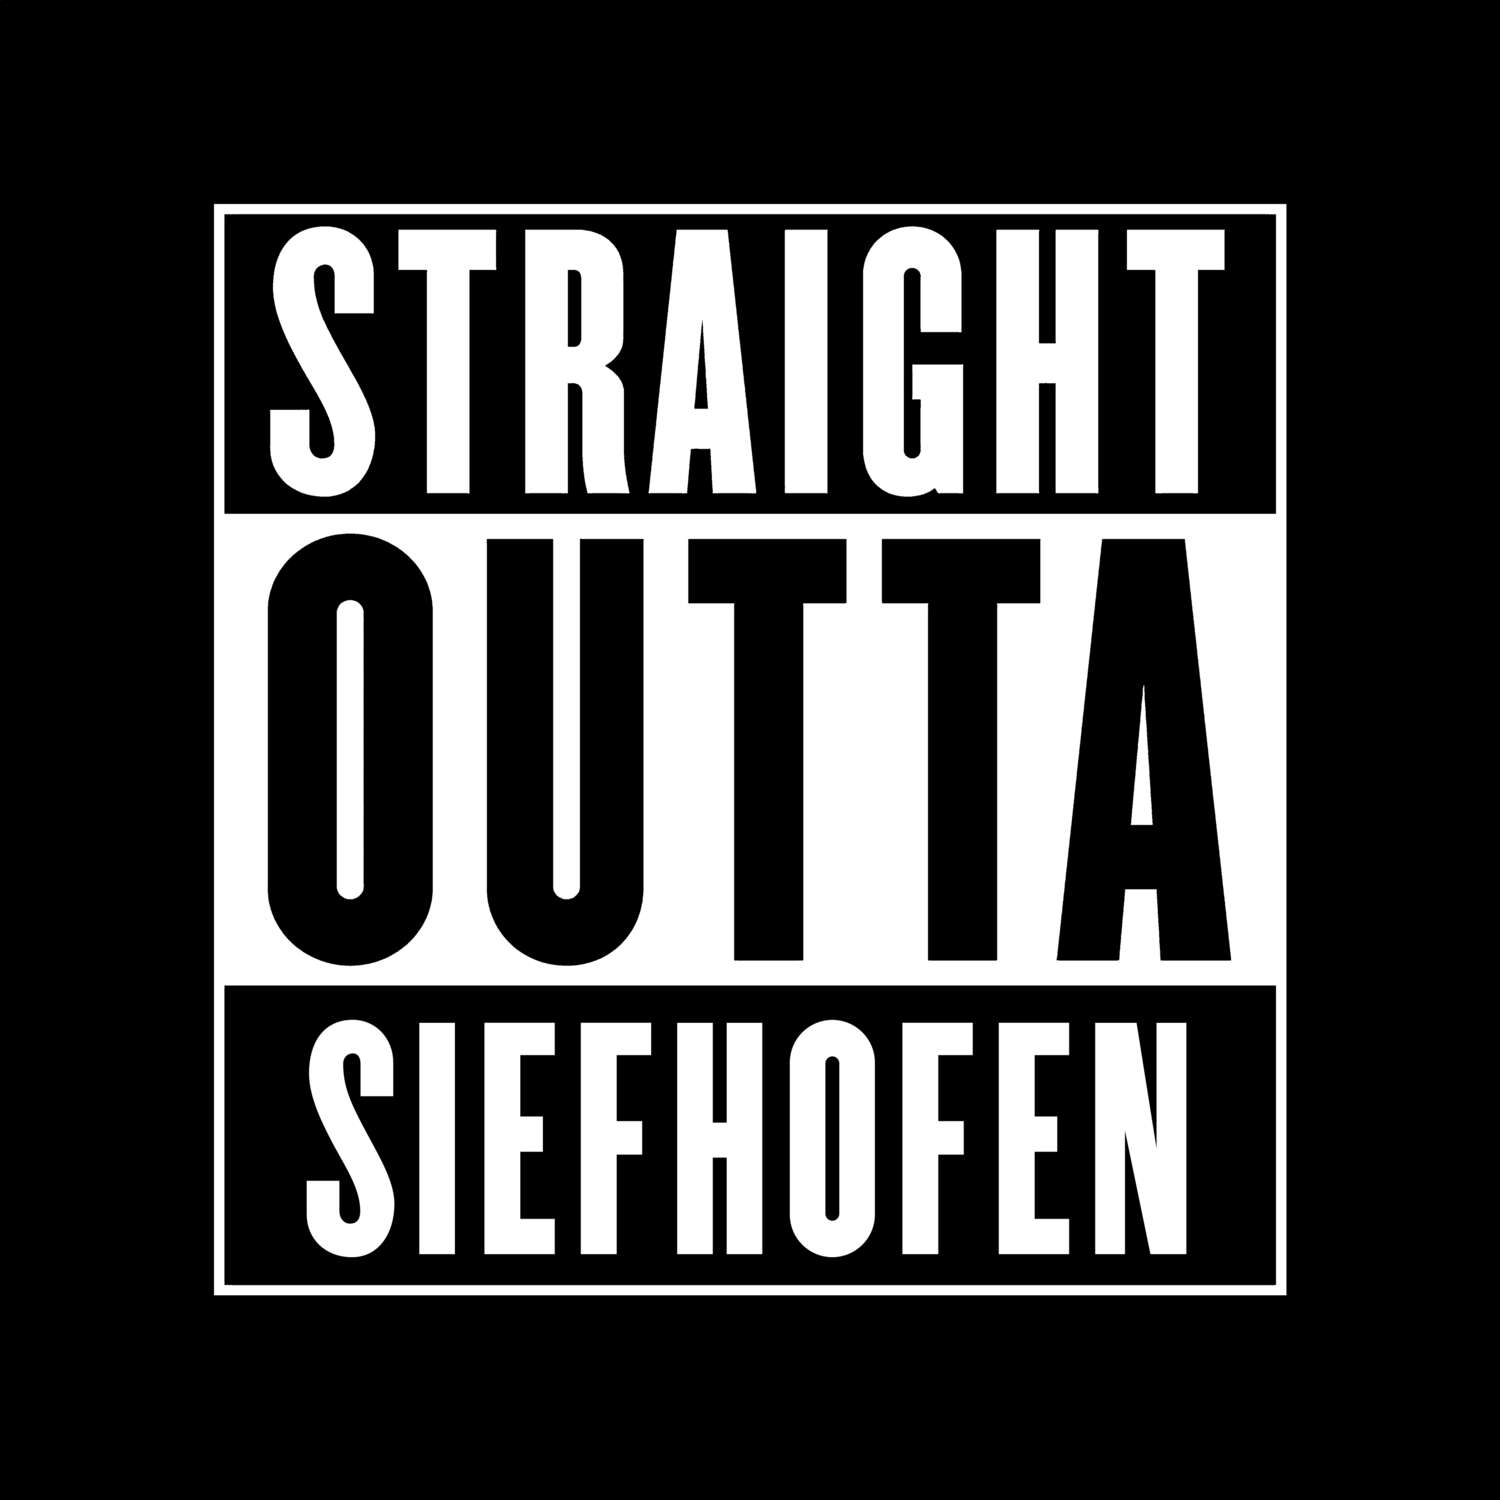 Siefhofen T-Shirt »Straight Outta«